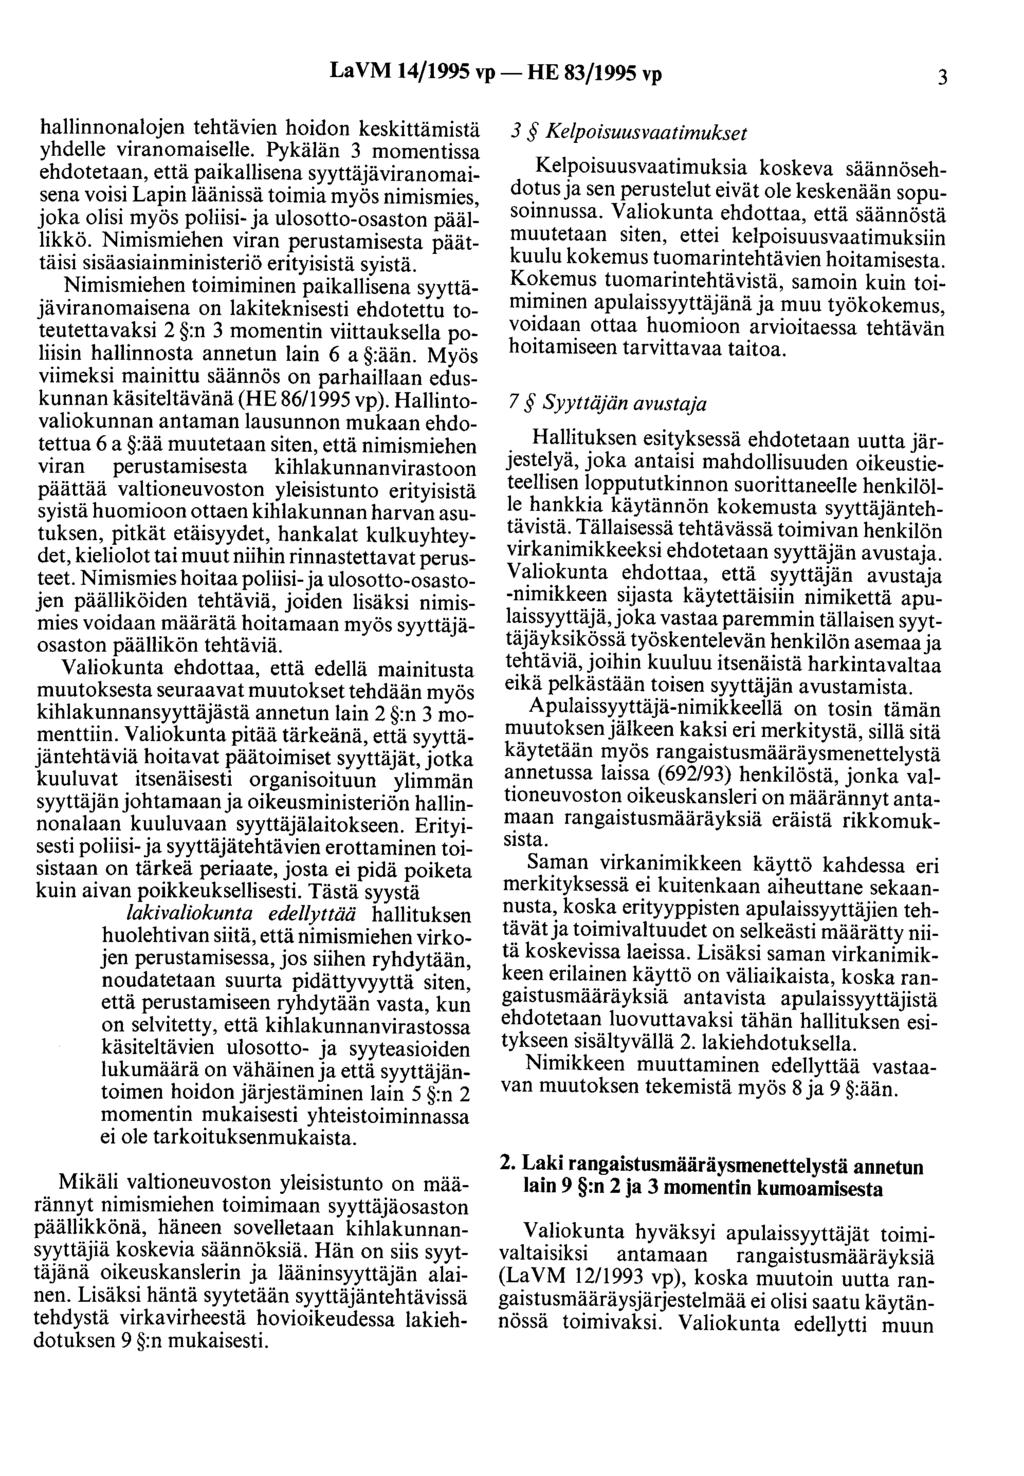 LaVM 14/1995 vp- HE 83/1995 vp 3 hallinnonalojen tehtävien hoidon keskittämistä yhdelle viranomaiselle.